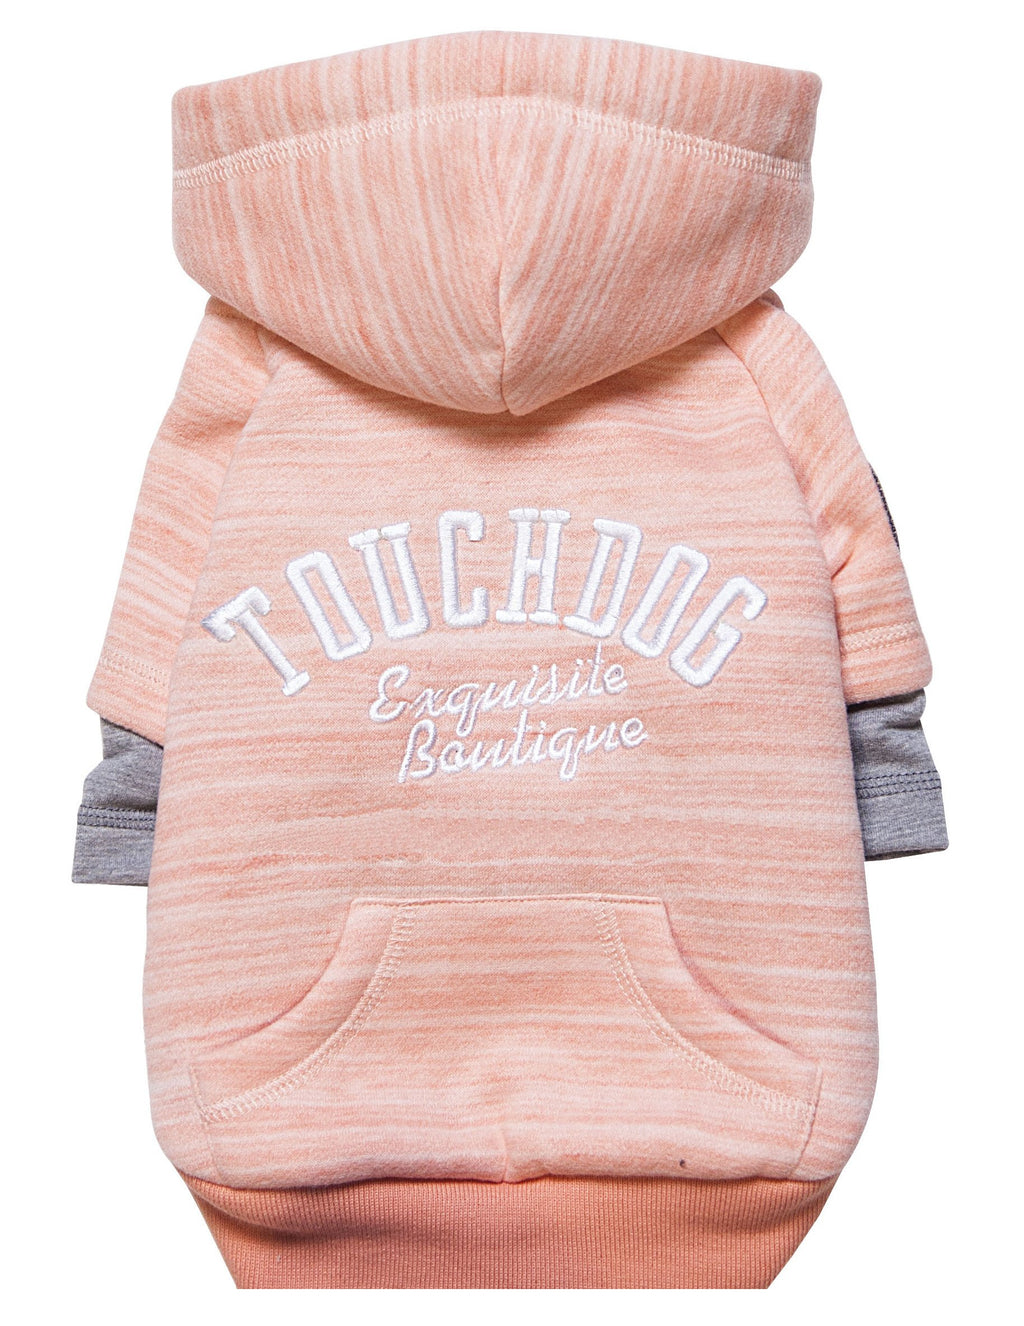 Touchdog ® Hampton Beach Designer Ultra Soft Sand-Blasted Cotton Dog Hoodie Sweater